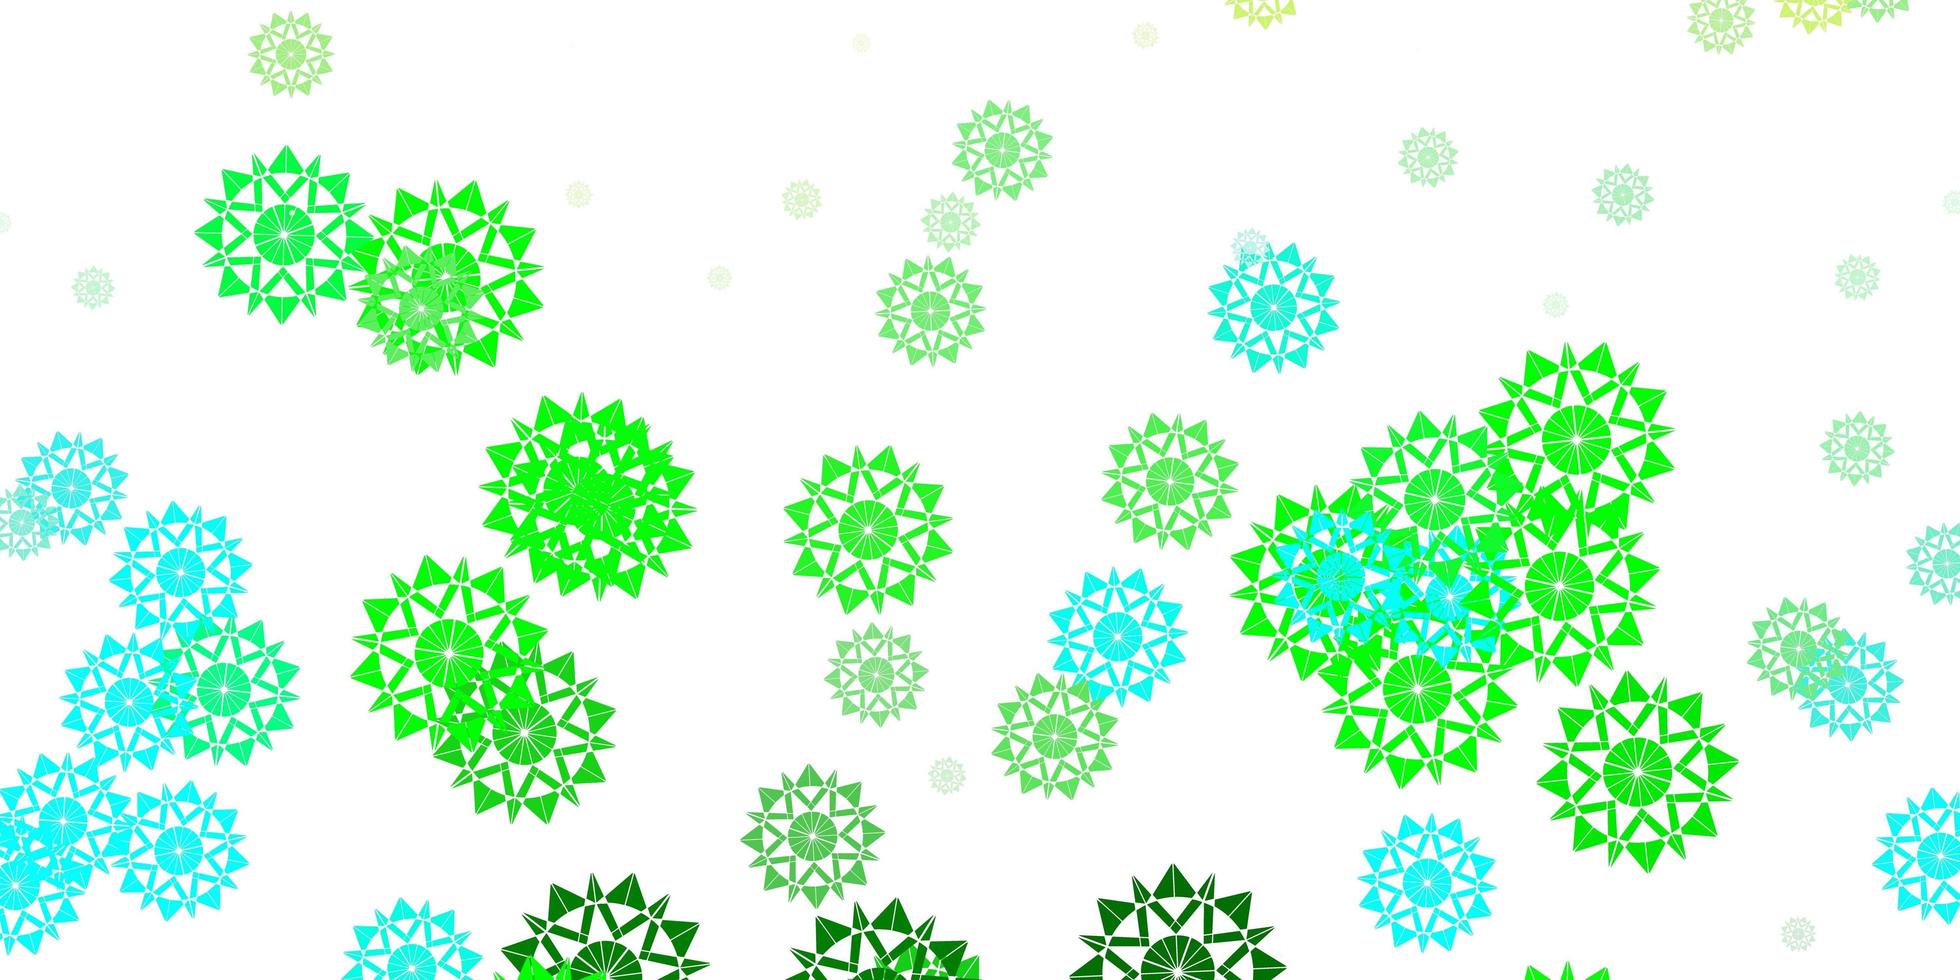 ljusblått, grönt vektormönster med färgade snöflingor. vektor